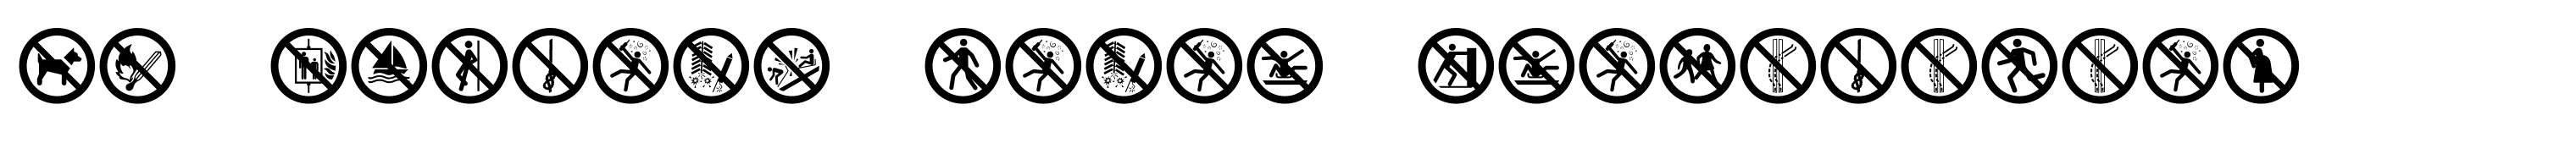 TB Symbols Color Prohibition